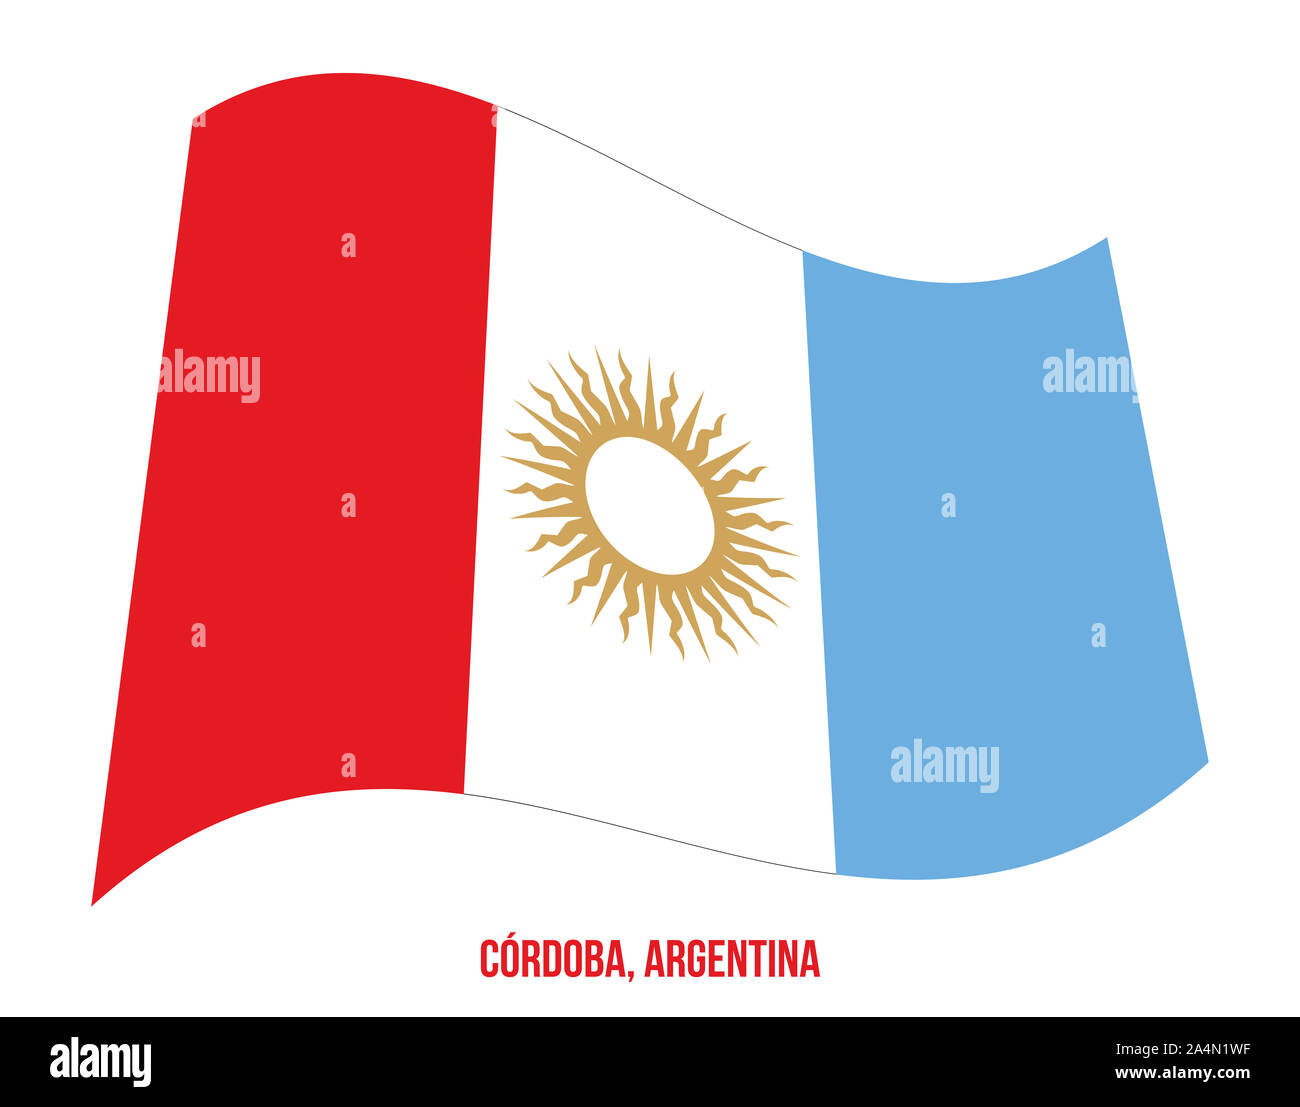 Cordoba Flag Waving Vector Illustration on White Background. Flag of Argentina Provinces. Stock Photo